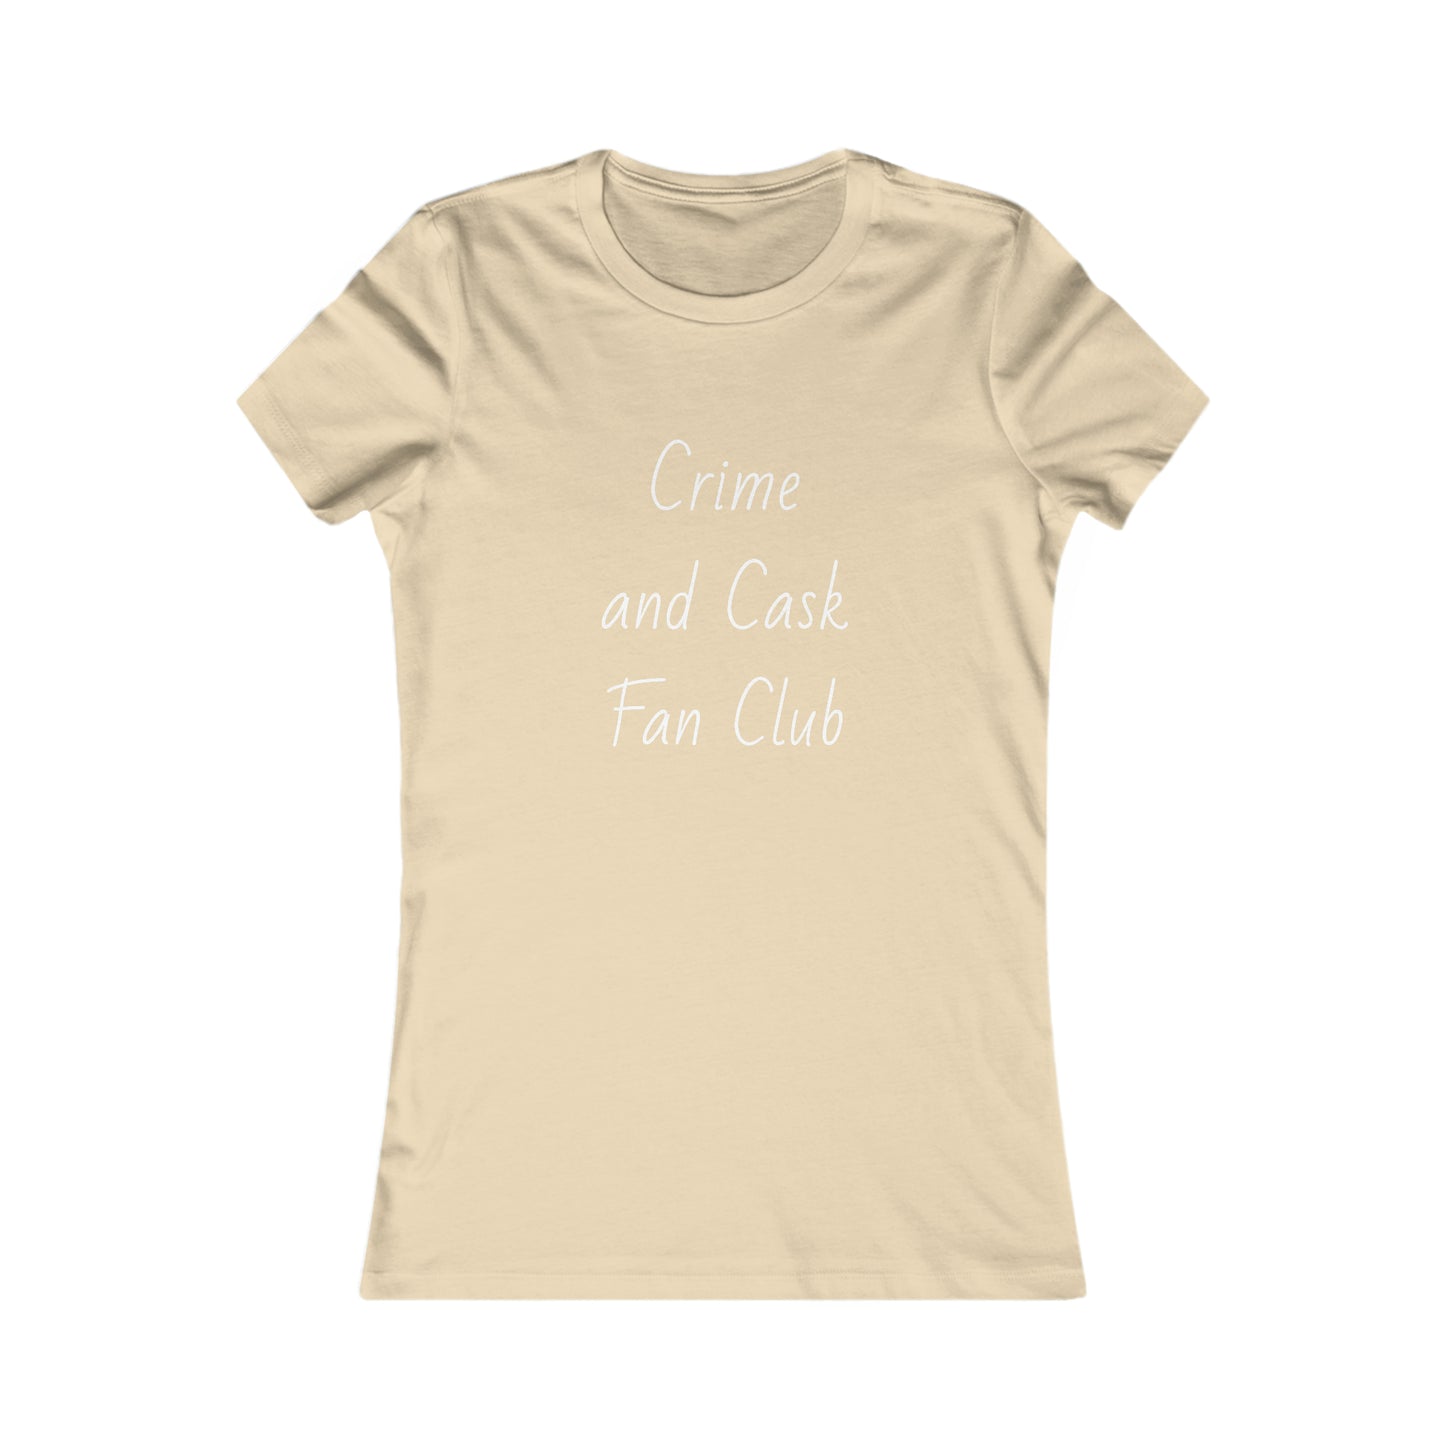 Crime and Cask Fan Club | Women's Favorite Tee